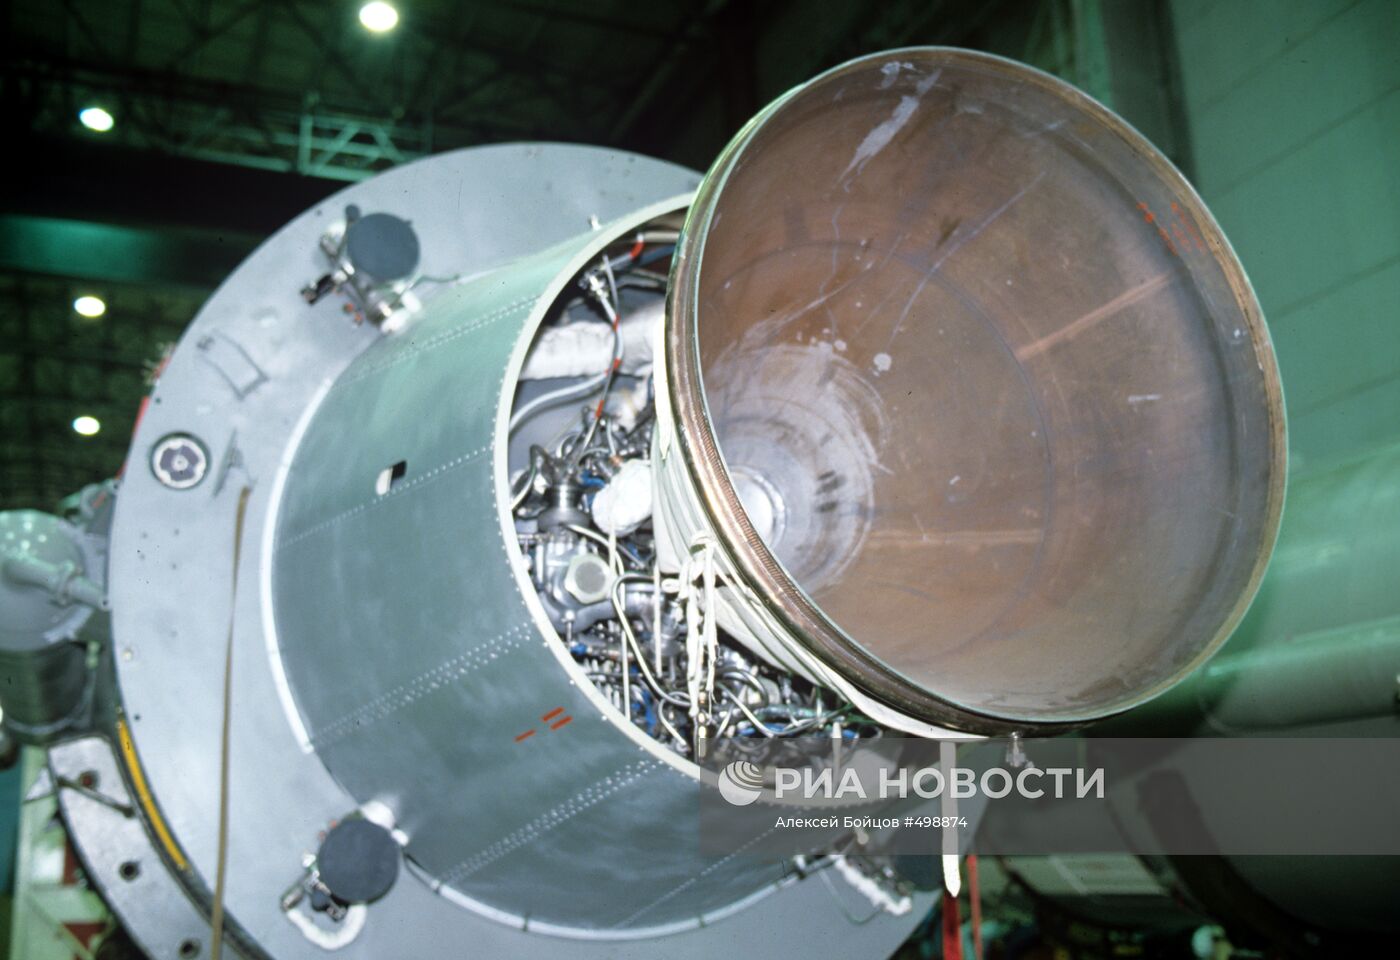 Ракета-носитель "Космос" в монтажно-испытательном корпусе